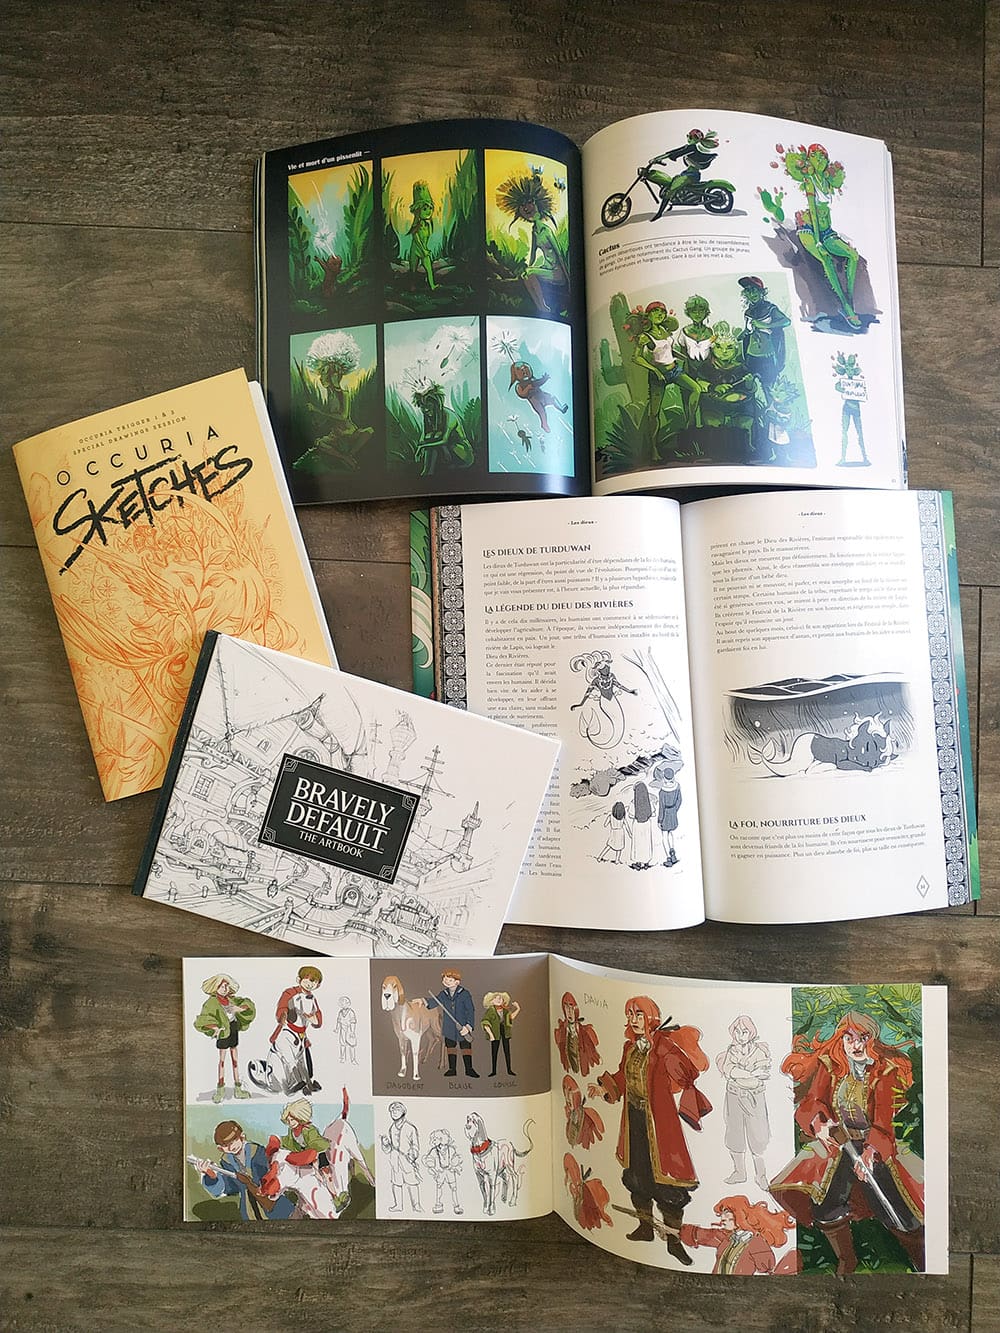 exemples d'artbooks en auto-édition avec des recherches et des informations sur les projets et univers.